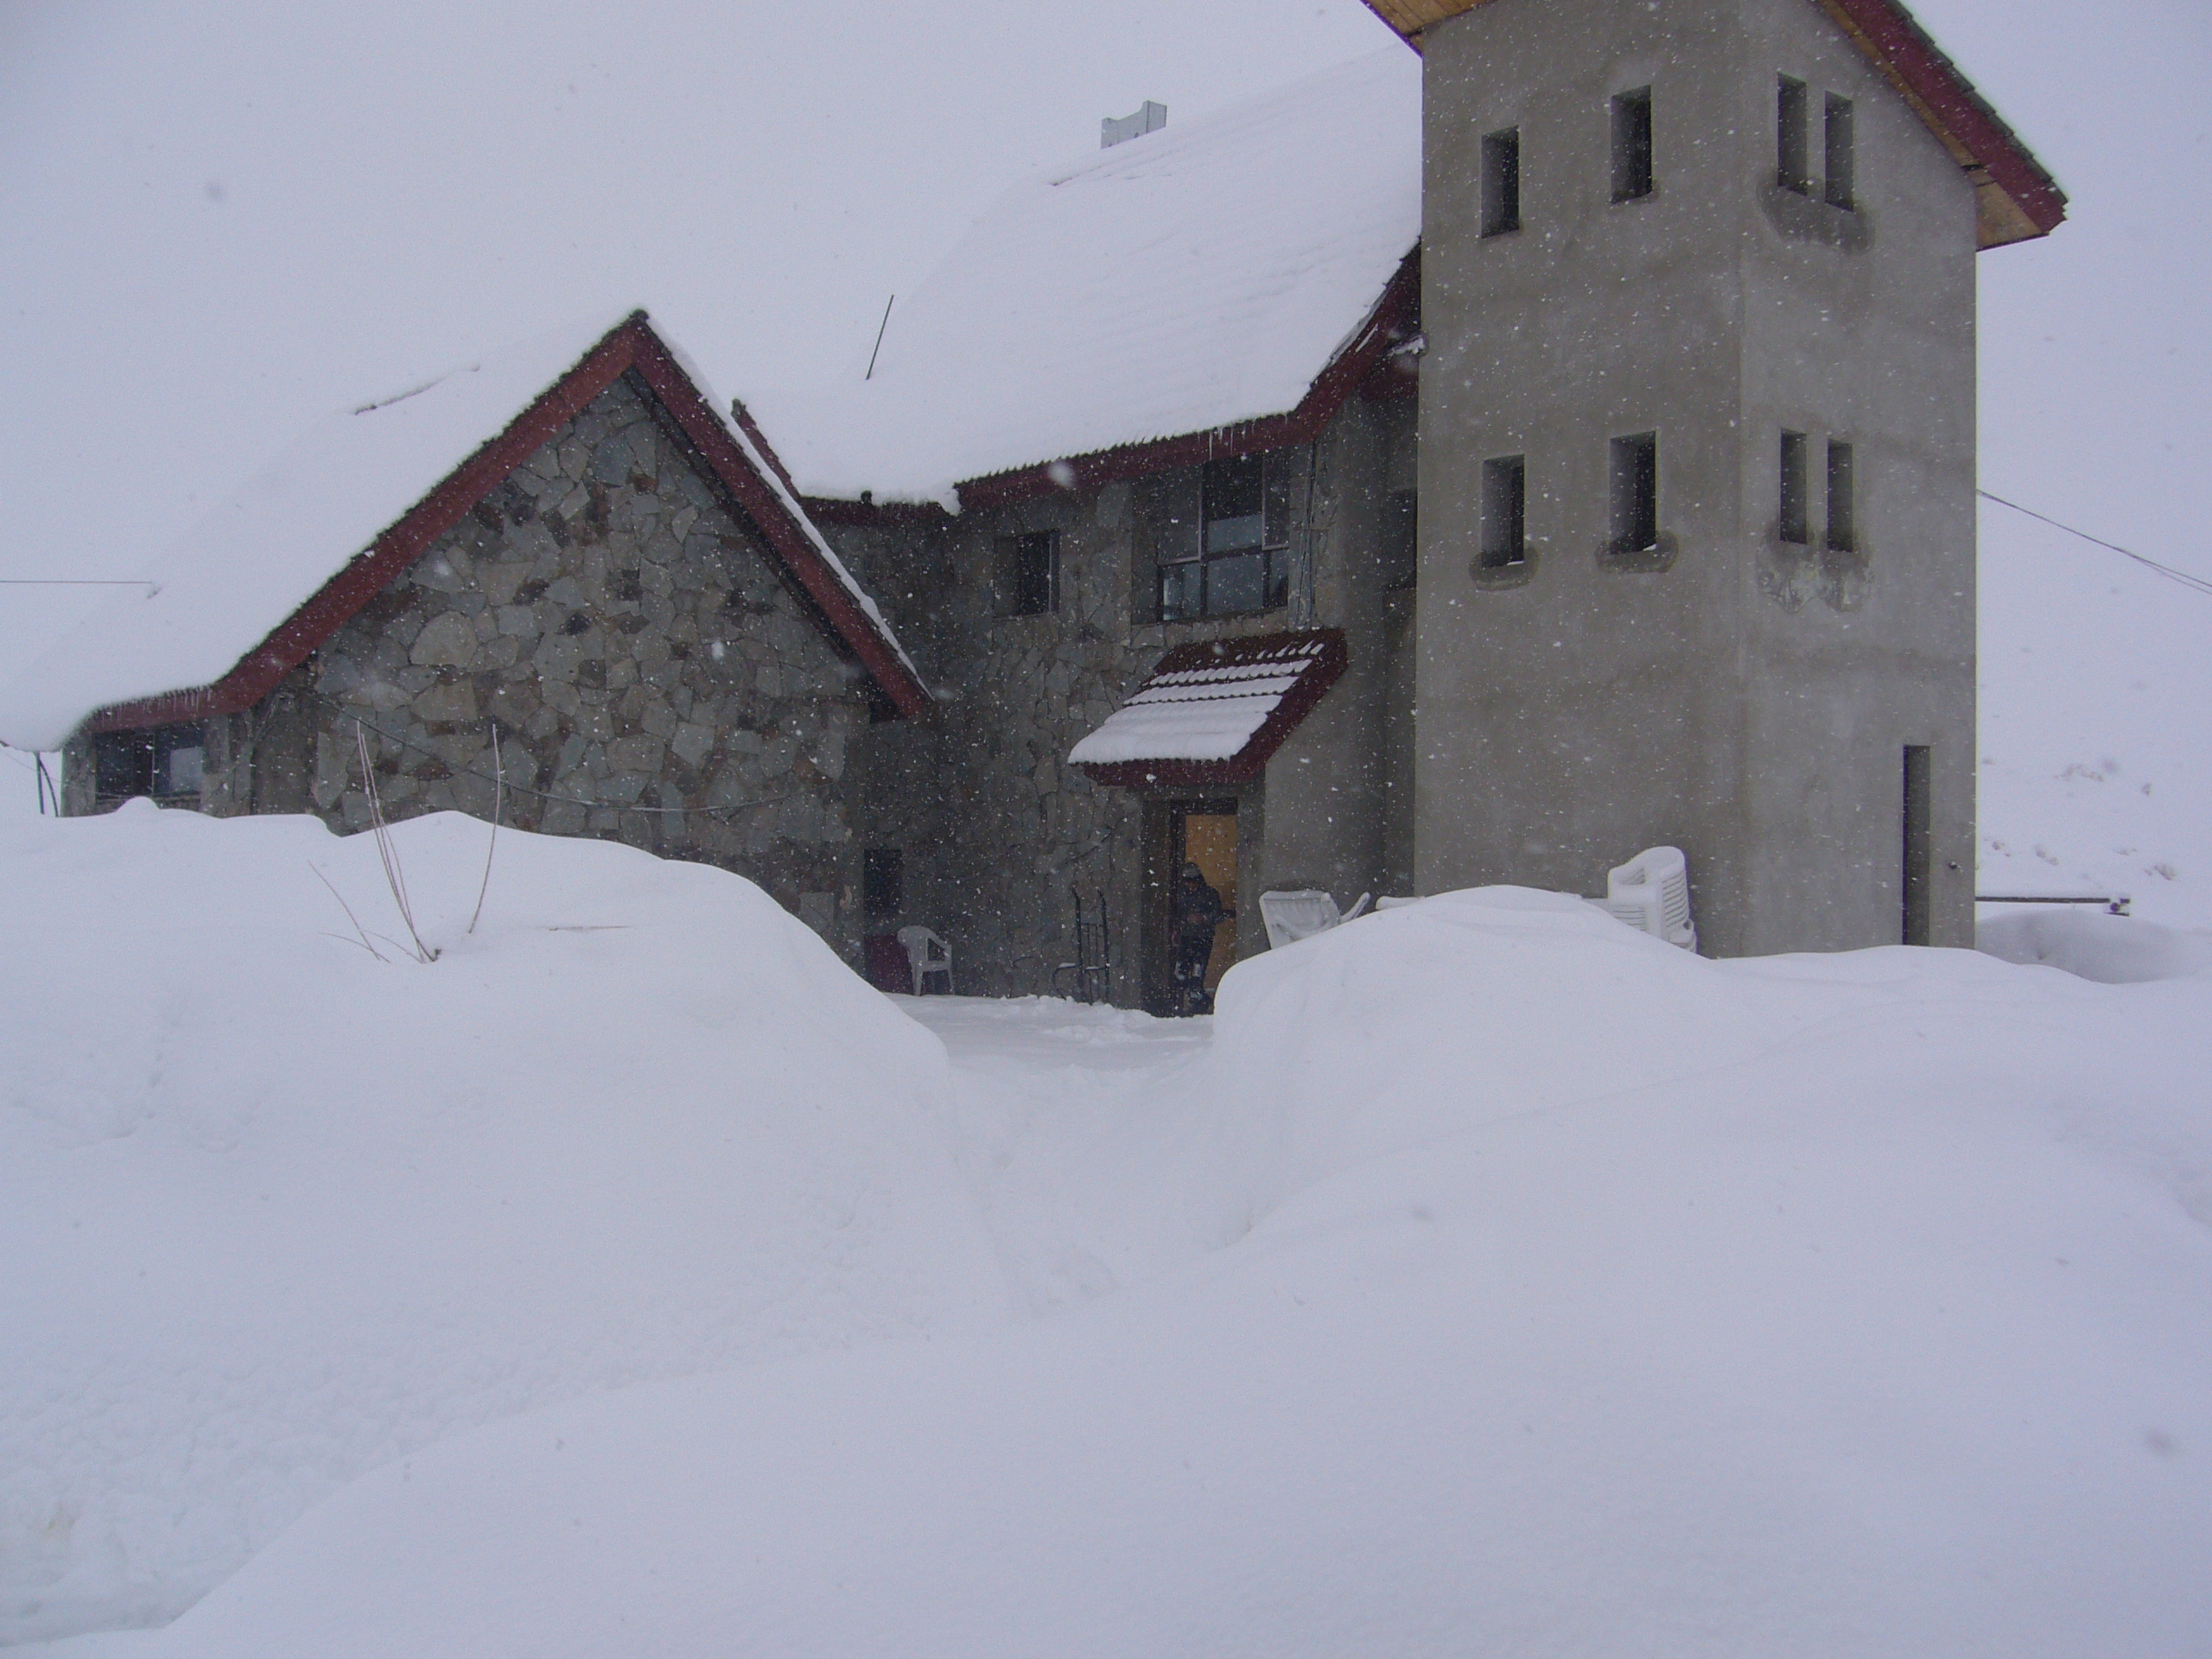 resturant, Pooladkaf Ski Resort